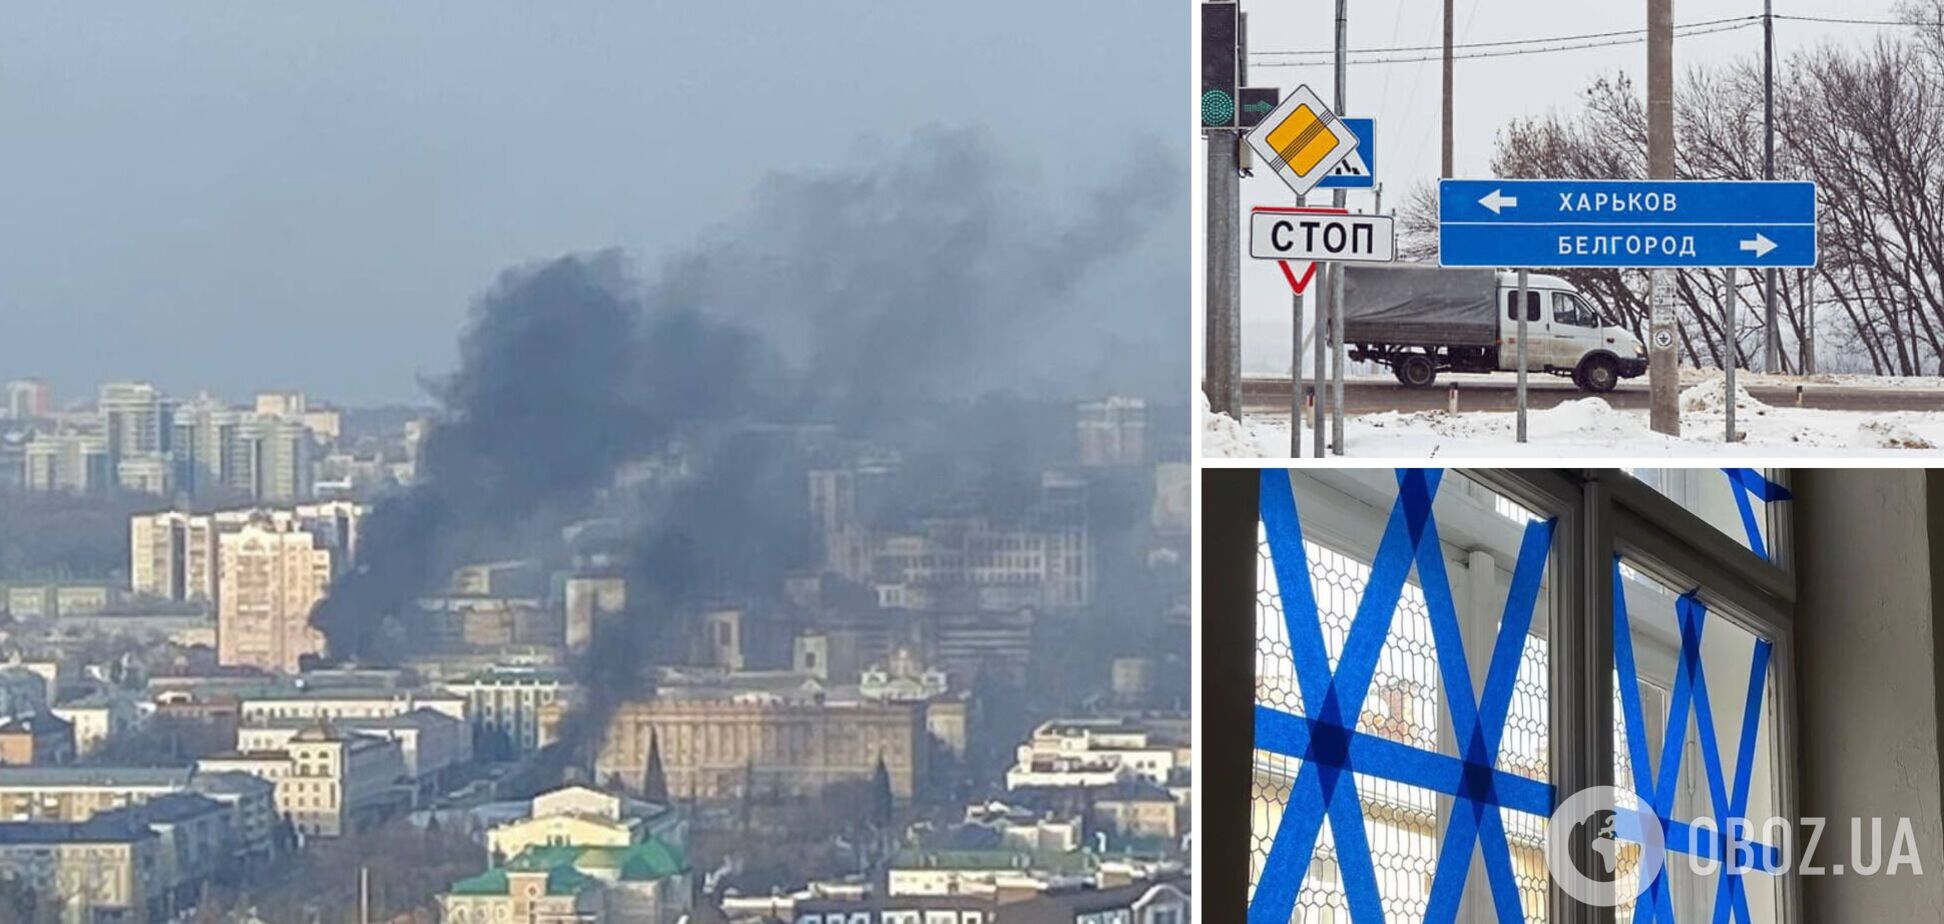 'Мы эту СВО не начинали': жителям Белгорода посоветовали заклеить окна скотчем на случай взрывов, те устроили истерику